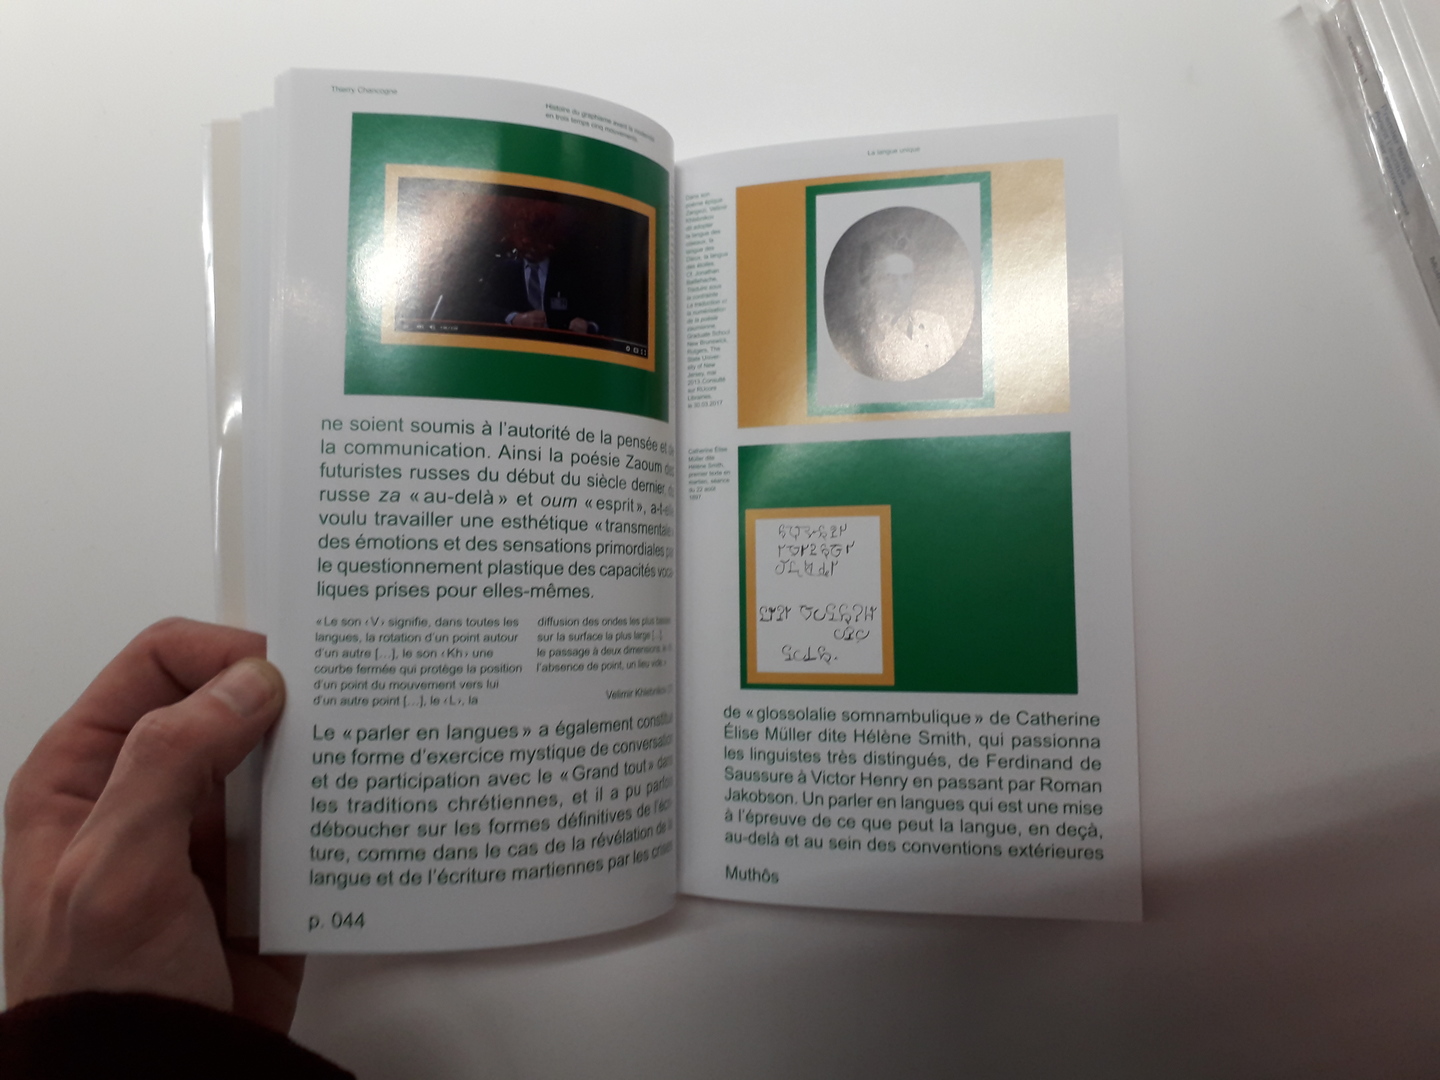 Double page avec images et textes à dominante verte et jaune (vue 2)